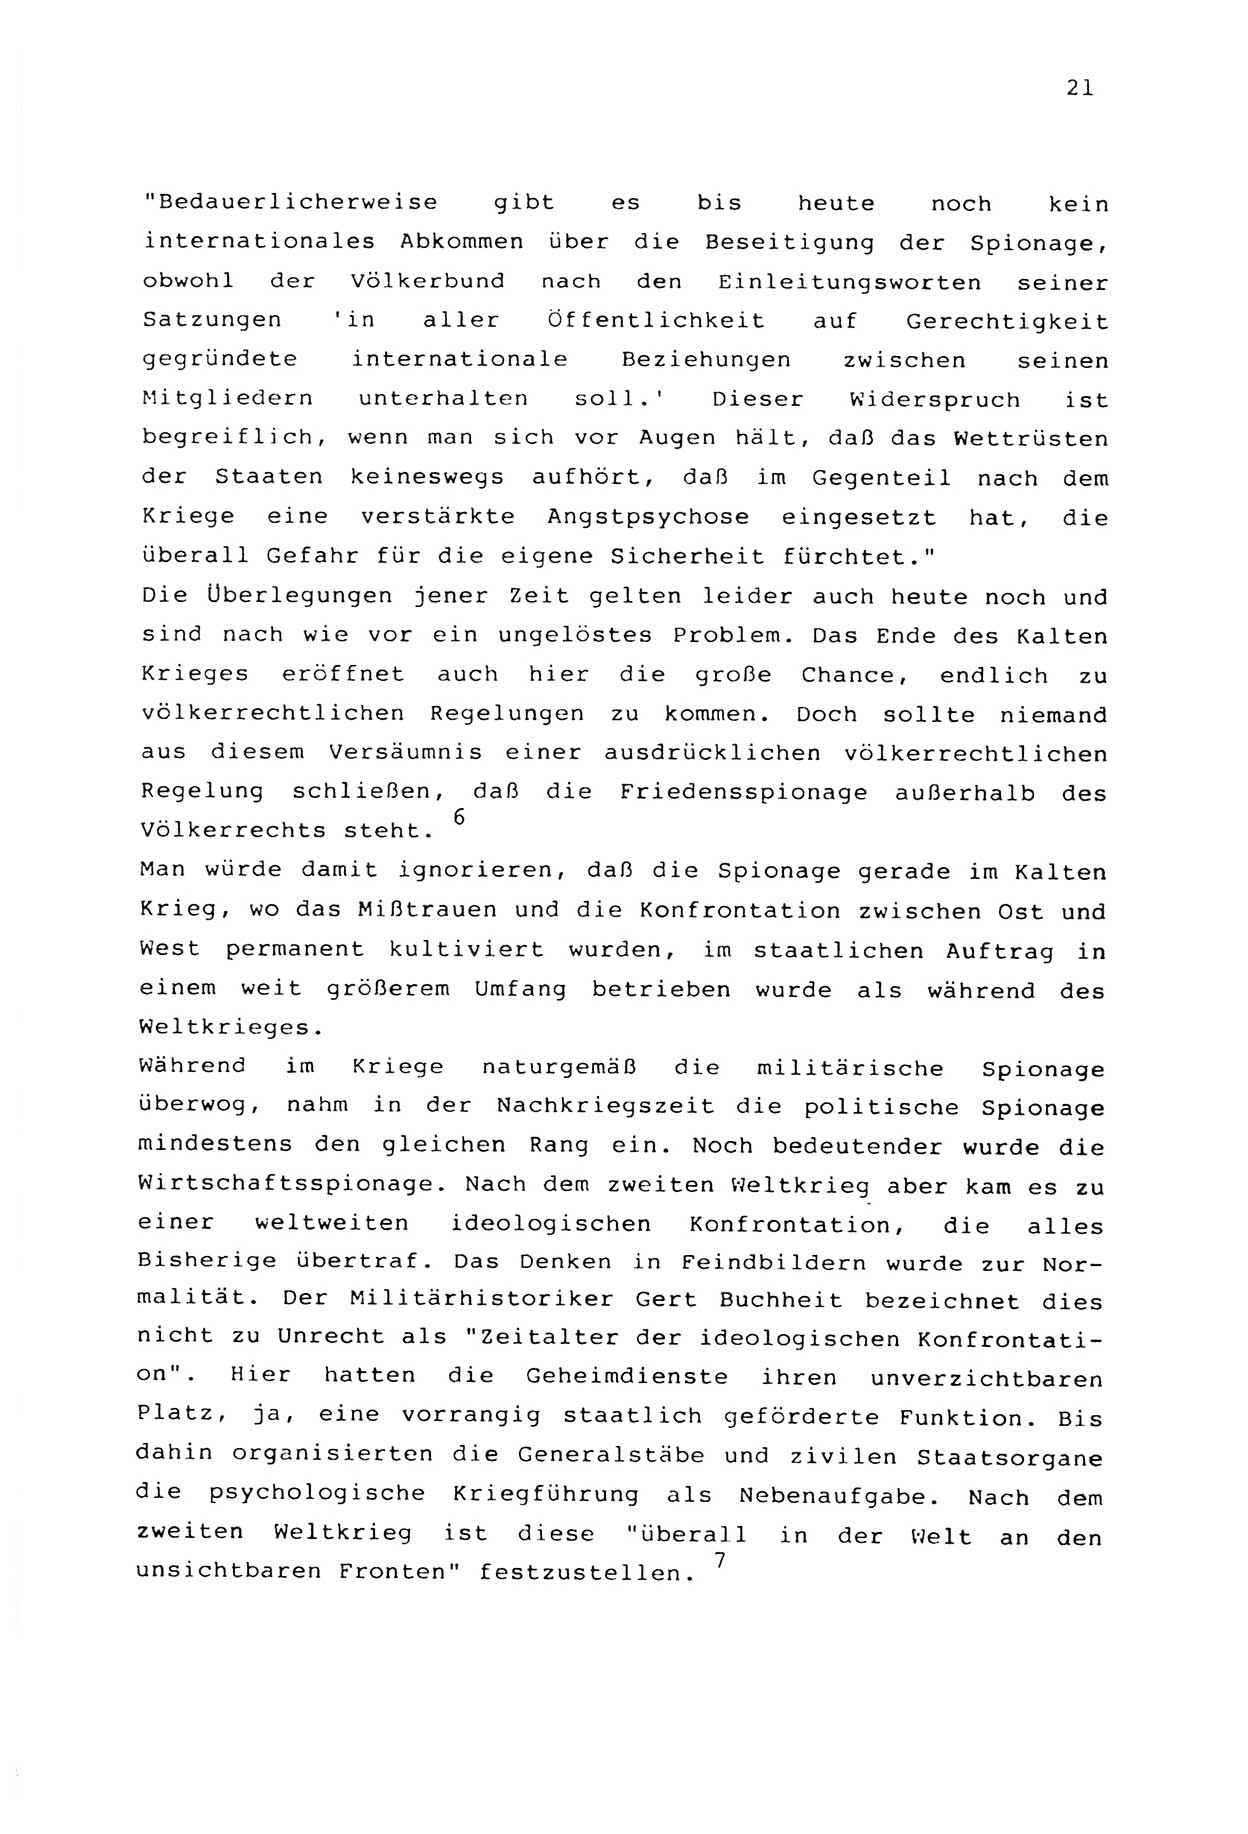 Zwie-Gespräch, Beiträge zur Aufarbeitung der Stasi-Vergangenheit [Deutsche Demokratische Republik (DDR)], Ausgabe Nr. 2, Berlin 1991, Seite 21 (Zwie-Gespr. Ausg. 2 1991, S. 21)